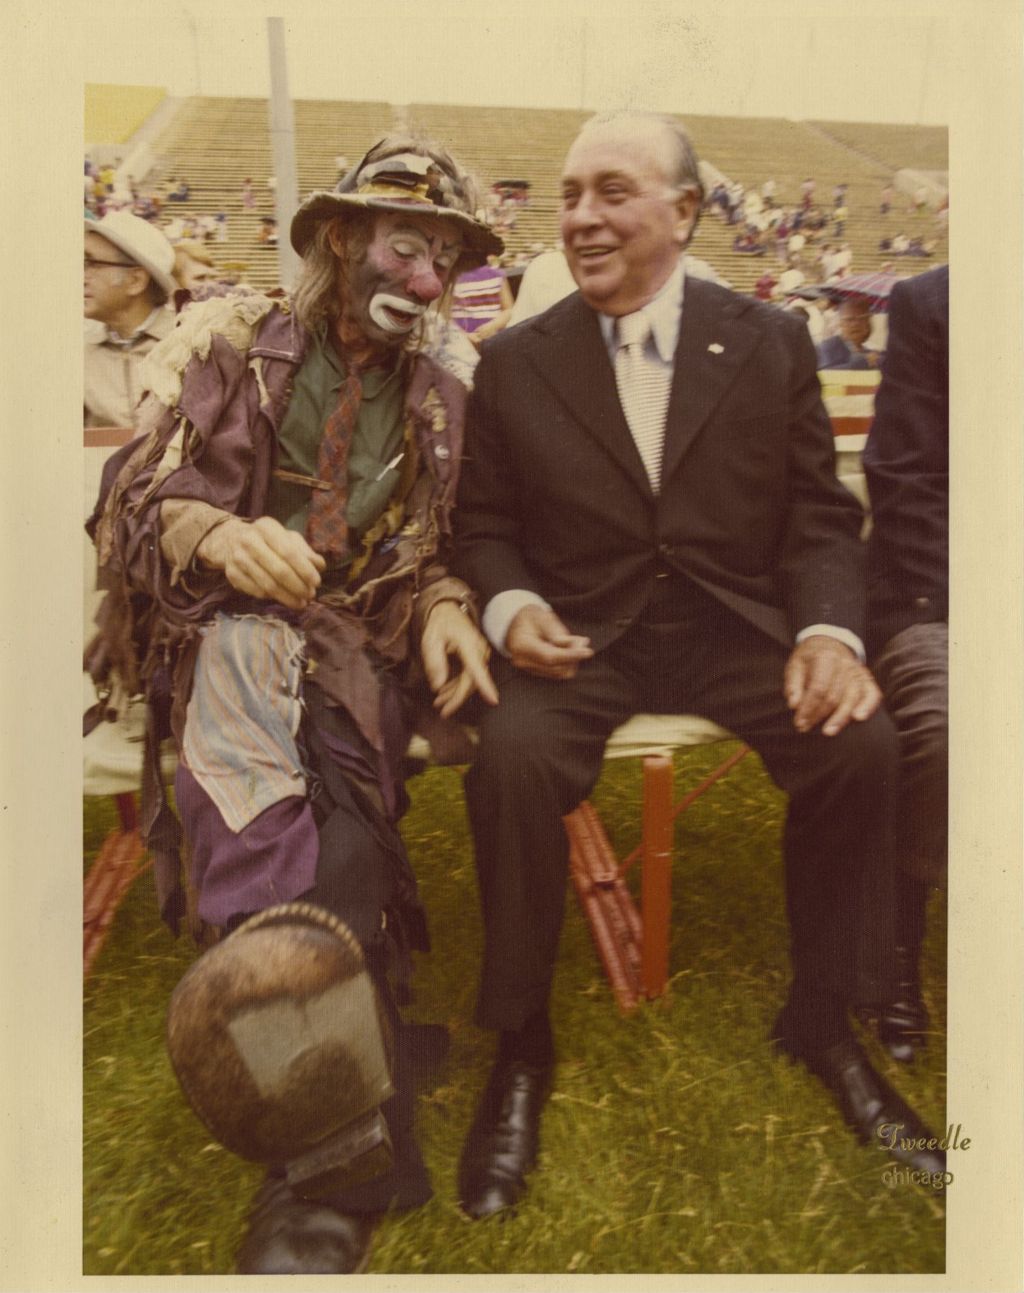 Richard J. Daley sitting with clown Emmett Kelly